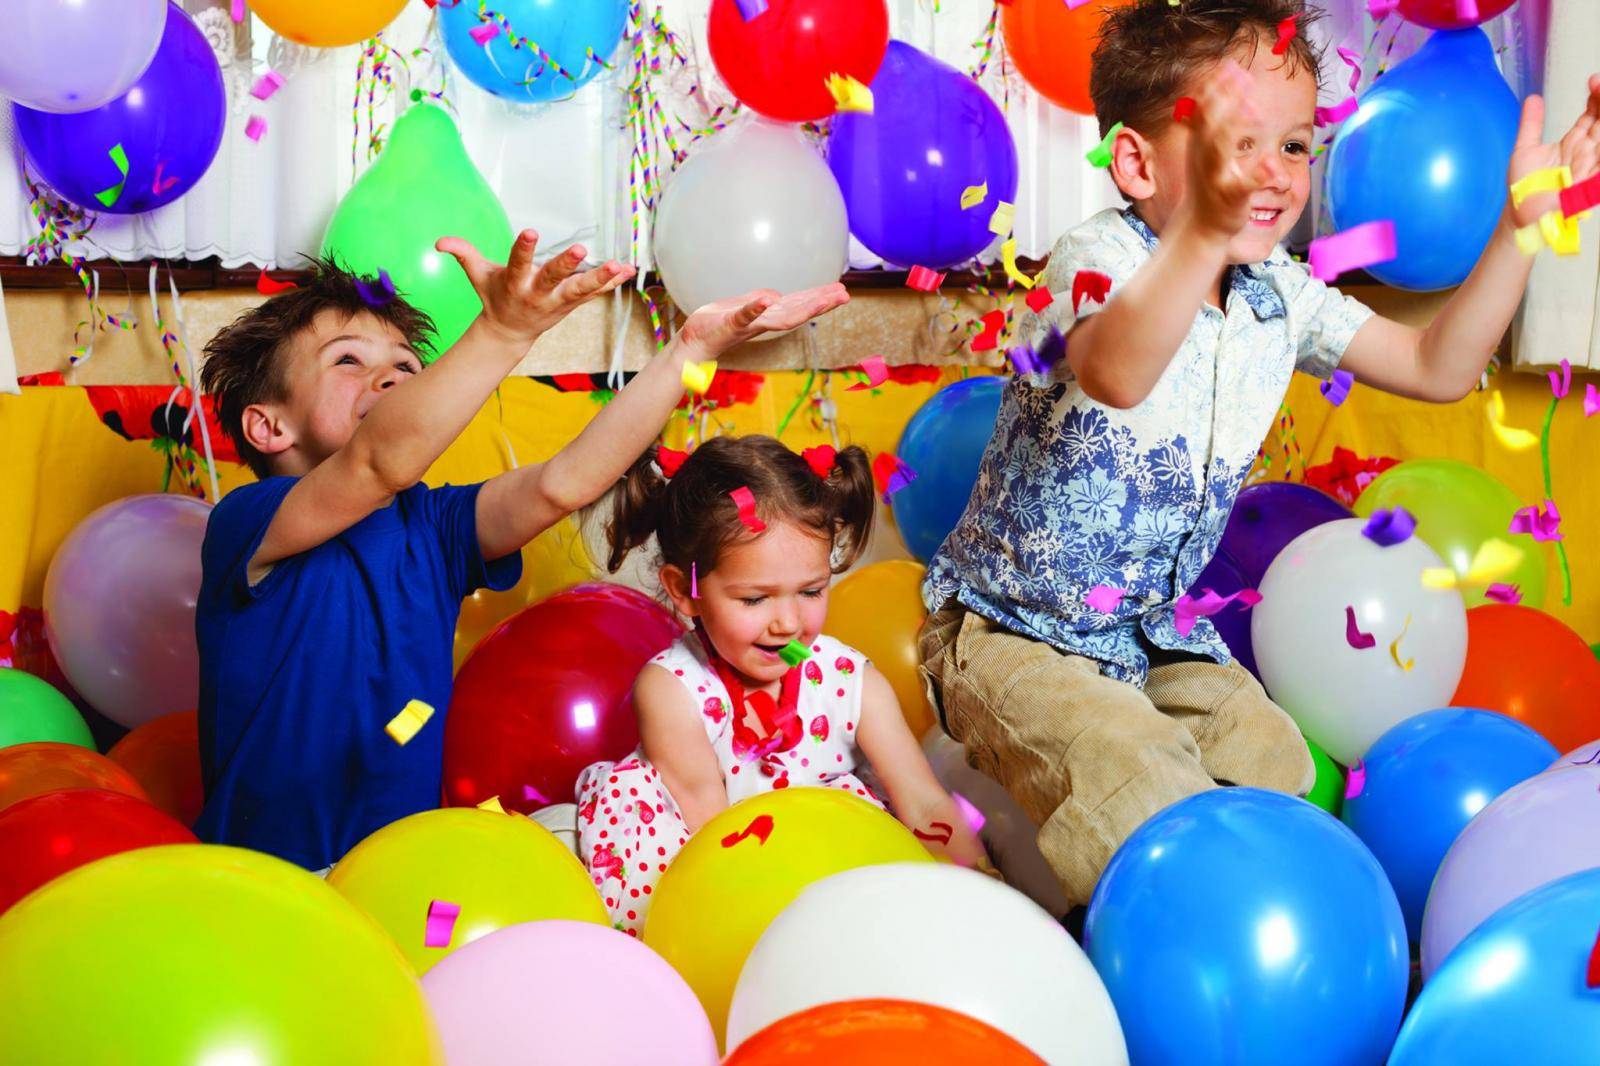 Мир веселья и счастья: развлечения на день рождения
мир веселья и счастья: развлечения на день рождения